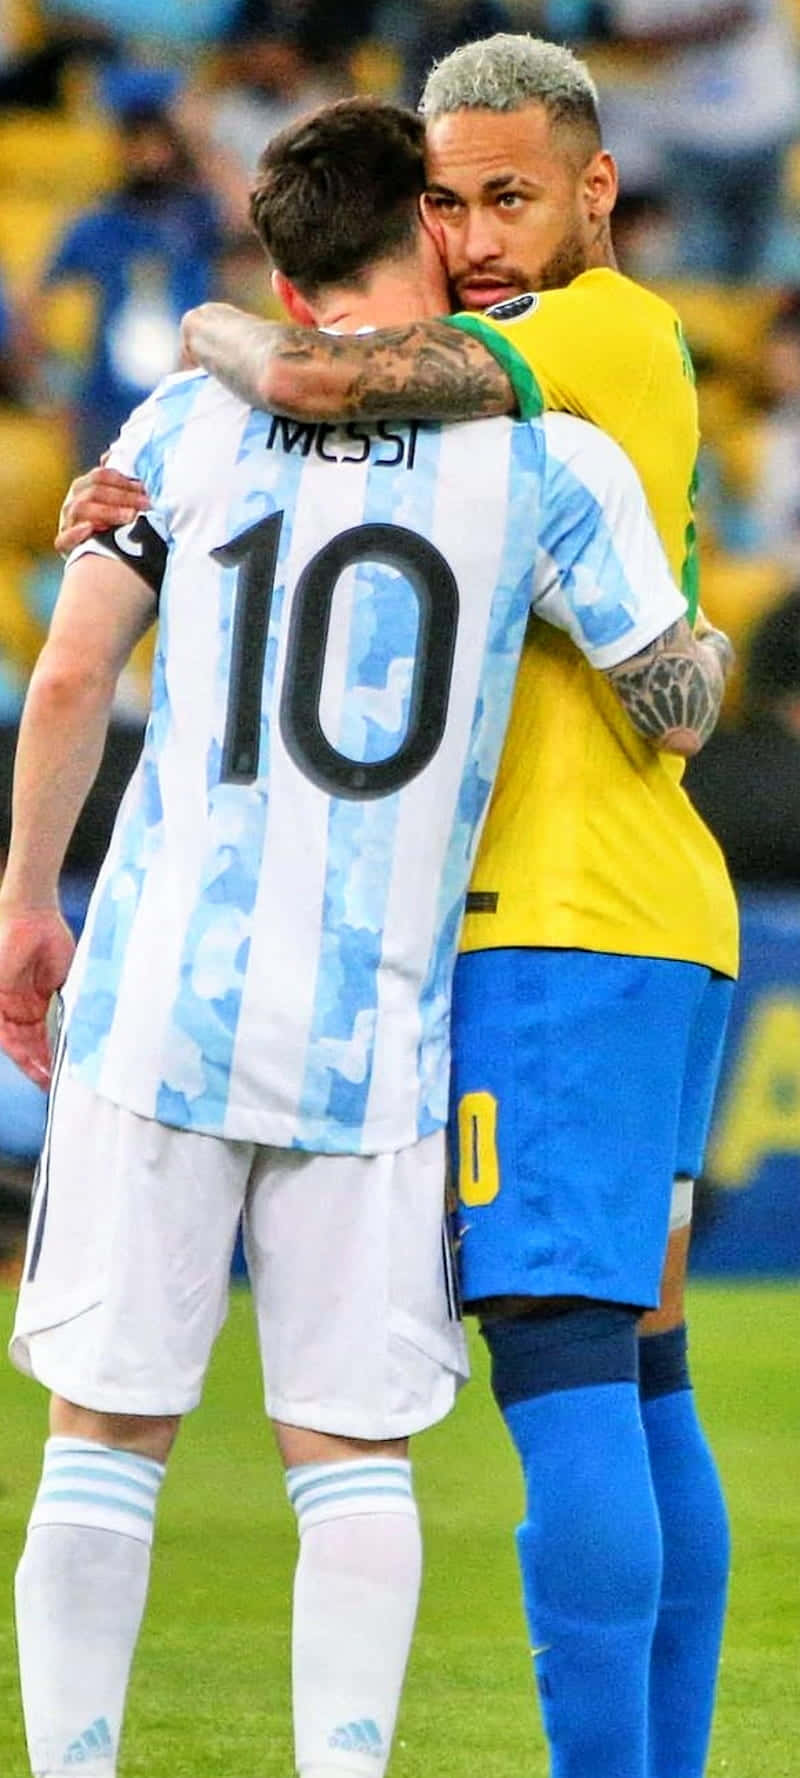 Bộ sưu tập hình nền về Messi và Neymar này thực sự là một điều đáng để xem. Được tạo ra từ những hình ảnh đẹp nhất của cặp đôi này trong suốt sự nghiệp, các bức hình nền này chứa đựng những cảm xúc, sức mạnh và tài năng của Messi và Neymar trên sân cỏ.